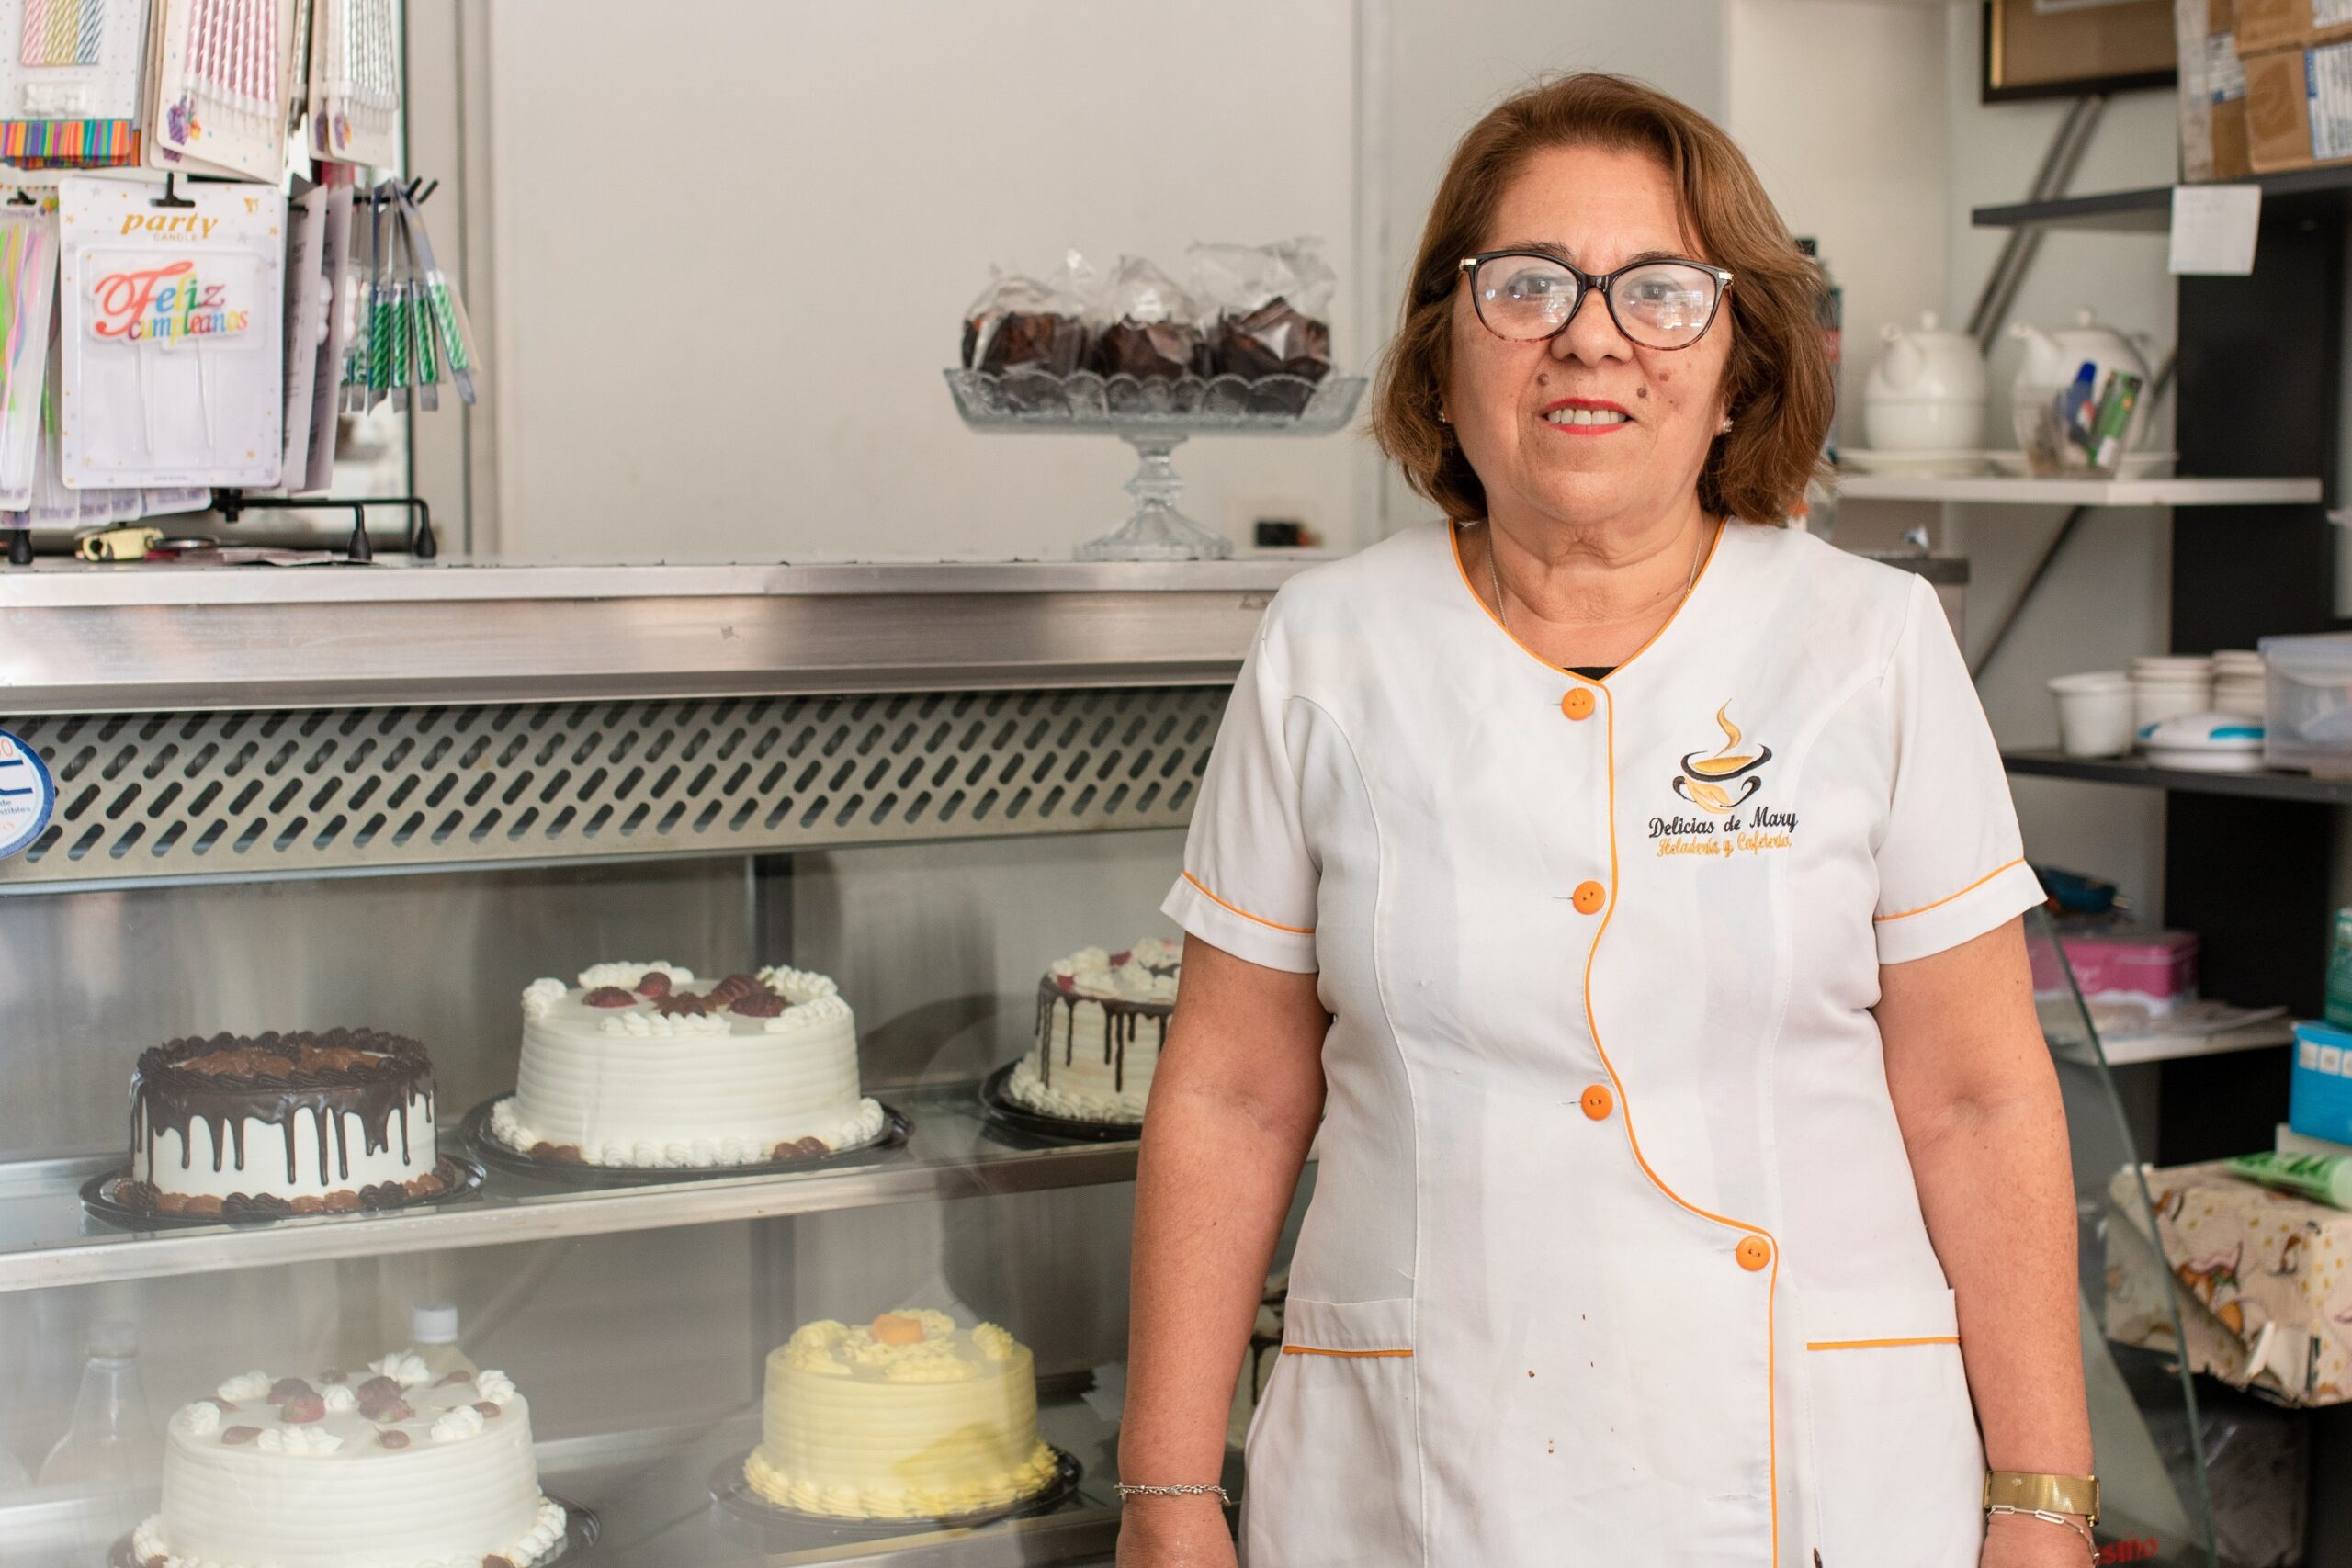 “Delicias de Mary”: Pastelería de Pozo Almonte en proceso de crecimiento gracias al programa Crea Tarapacá Emprende